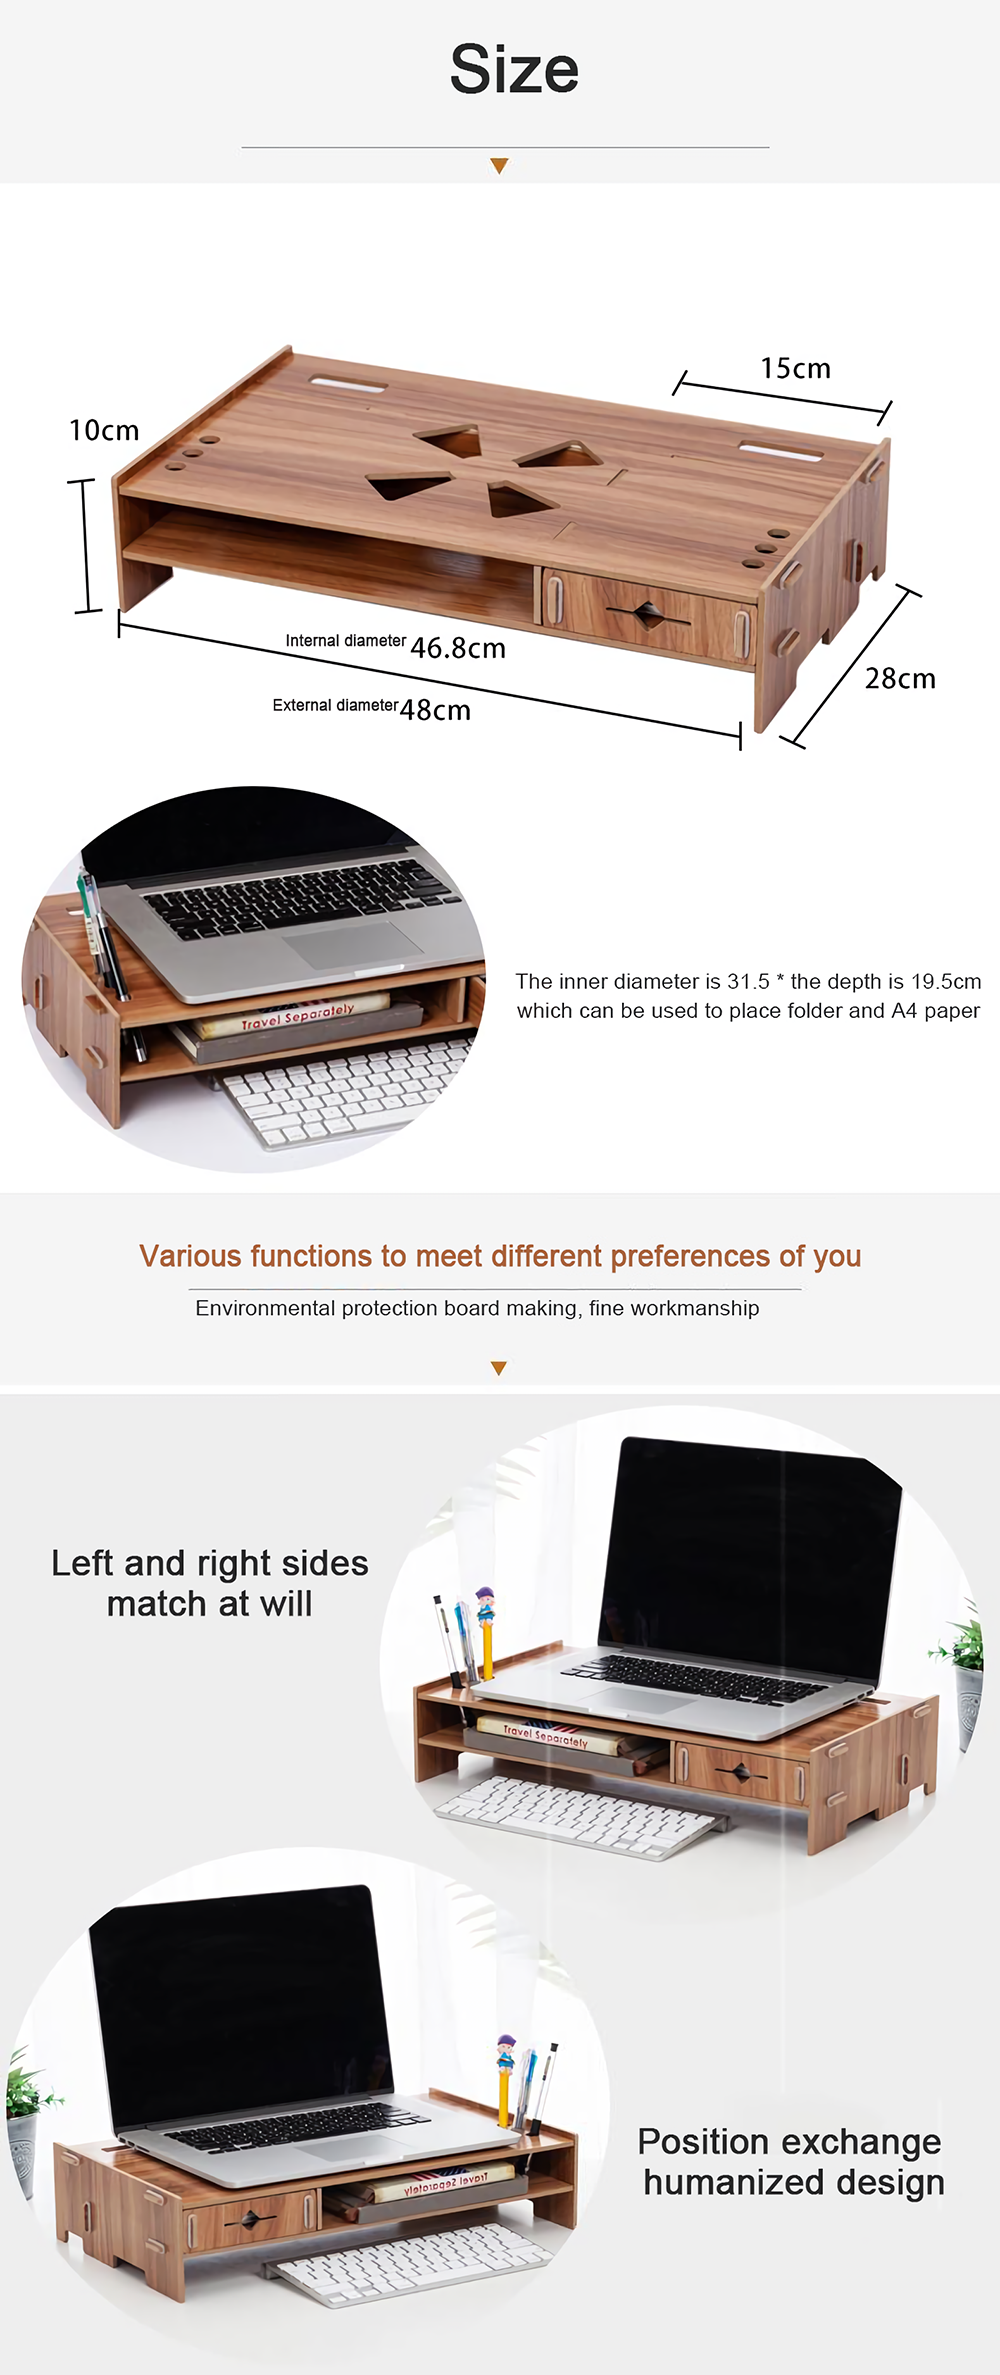 DIY-Wooden-Computer-Laptop-Stand-Holder-Monitor-Riser-Desk-Organizer-Stand-Base-with-Storage-Organiz-1801670-2